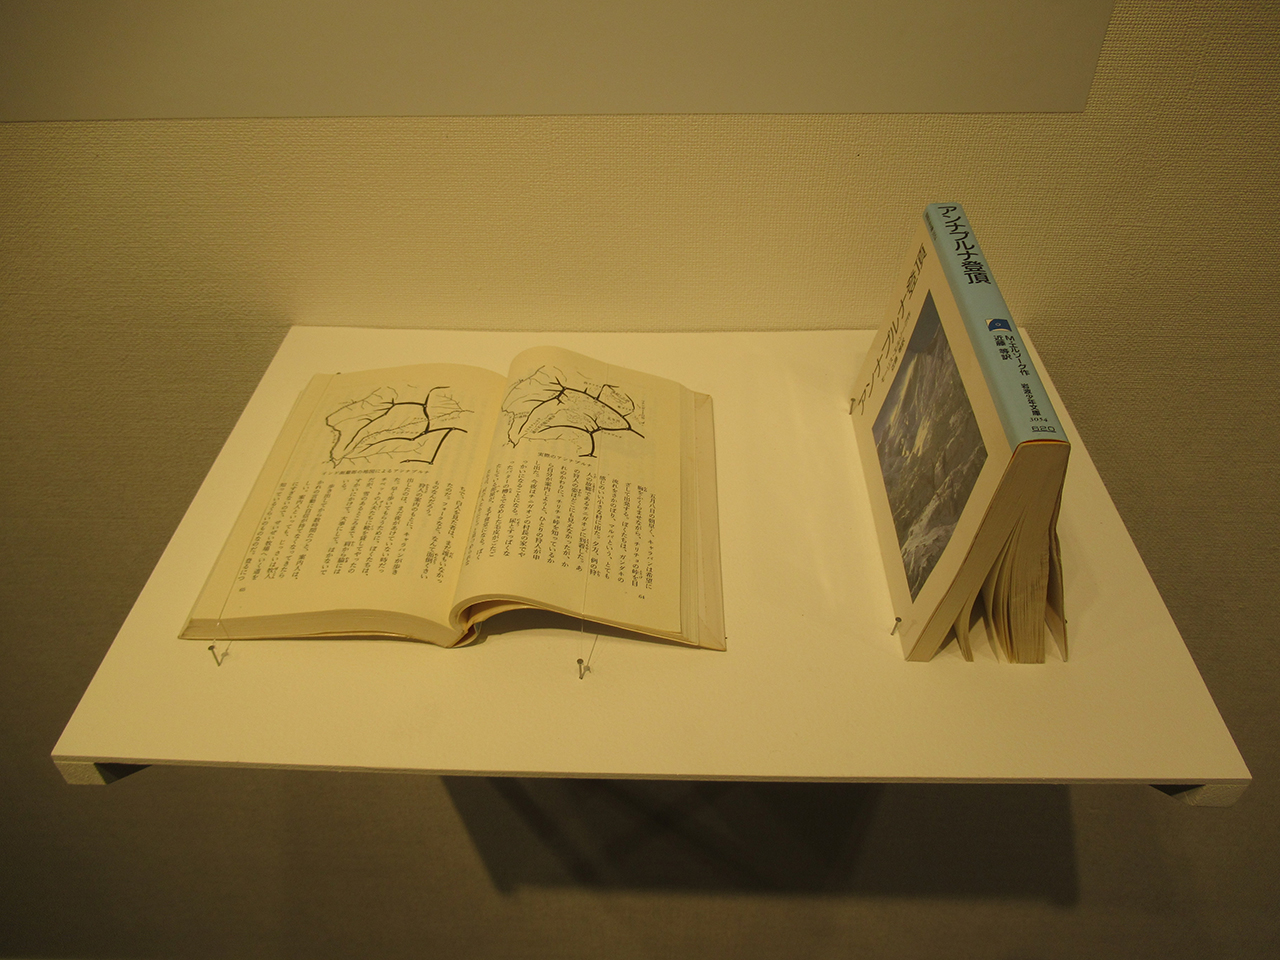 モーリス・エルゾーグ（近藤等訳）『アンナプルナ登頂』岩波少年文庫 1989年。 本を開いて山のように三角形に立てて展示している